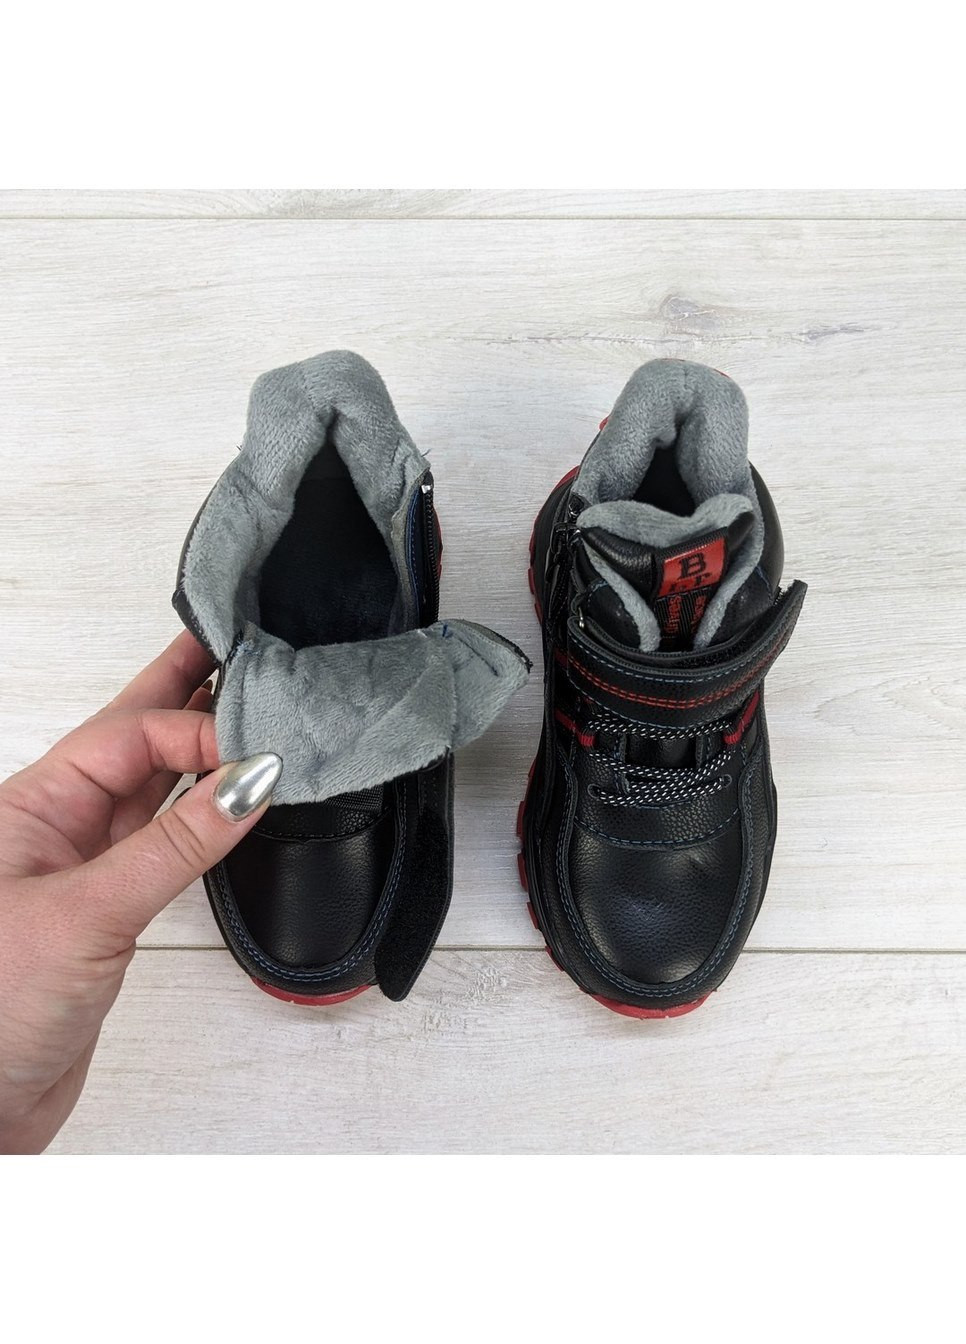 Черные повседневные осенние ботинки детские демисезонные для мальчика MLV